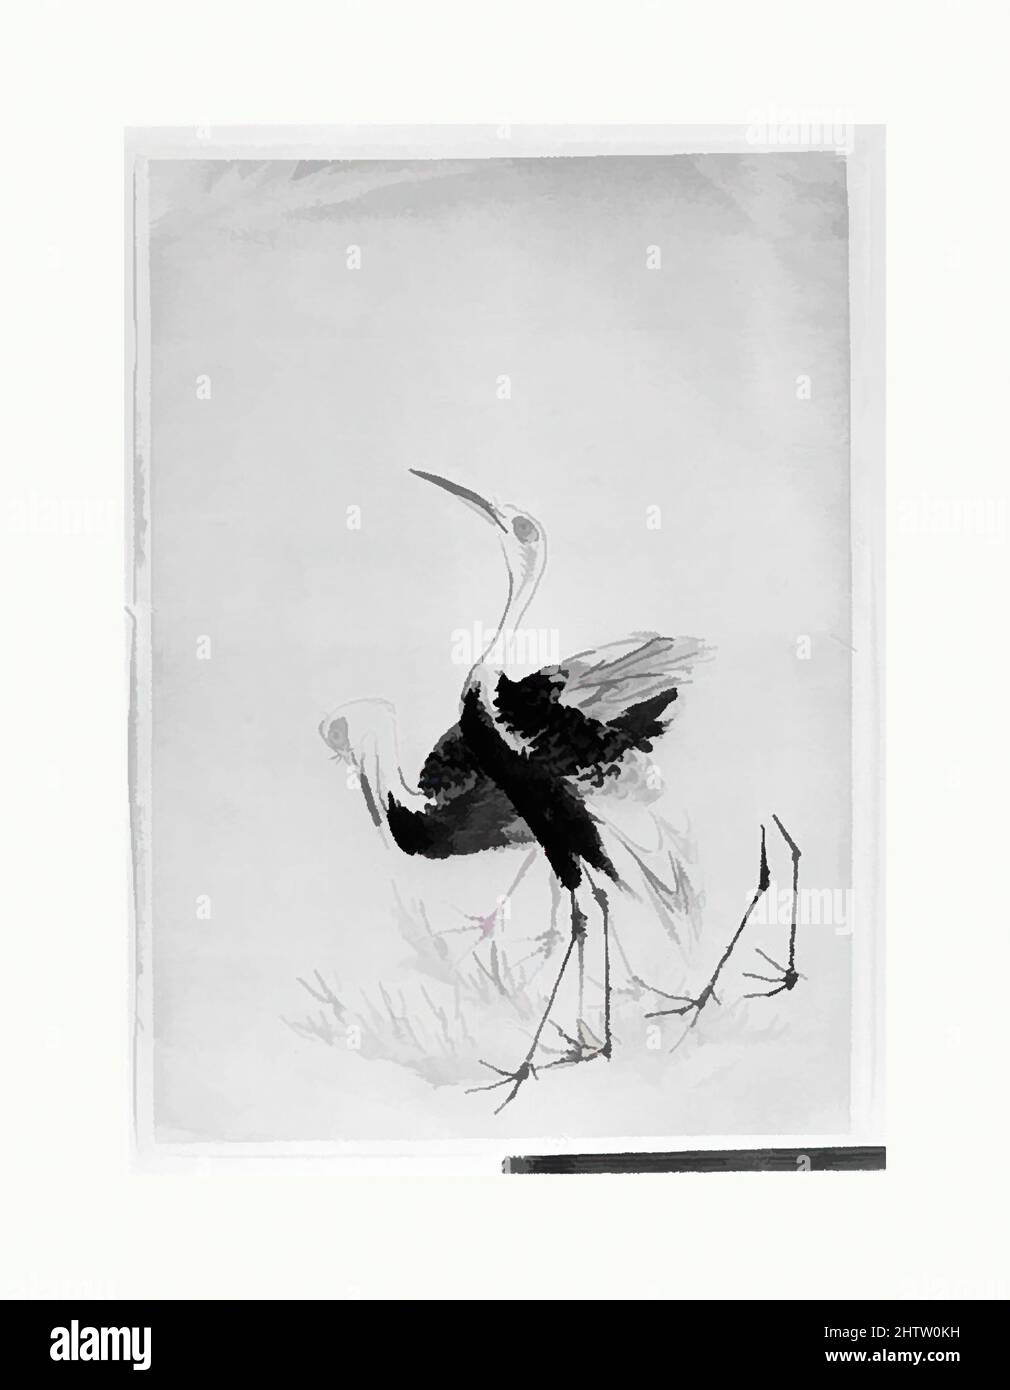 Kunst inspiriert von zwei Kranichen, Edo-Zeit (1615–1868), 19. Jahrhundert, Japan, unmontierte Malerei; Tinte und Aquarell auf Papier, 15 3/8 x 10 7/8 Zoll (39,1 x 27,6 cm), Gemälde, Hokusai-Schule, Klassische Werke, die von Artotop mit einem Schuss Moderne modernisiert wurden. Formen, Farbe und Wert, auffällige visuelle Wirkung auf Kunst. Emotionen durch Freiheit von Kunstwerken auf zeitgemäße Weise. Eine zeitlose Botschaft, die eine wild kreative neue Richtung verfolgt. Künstler, die sich dem digitalen Medium zuwenden und die Artotop NFT erschaffen Stockfoto